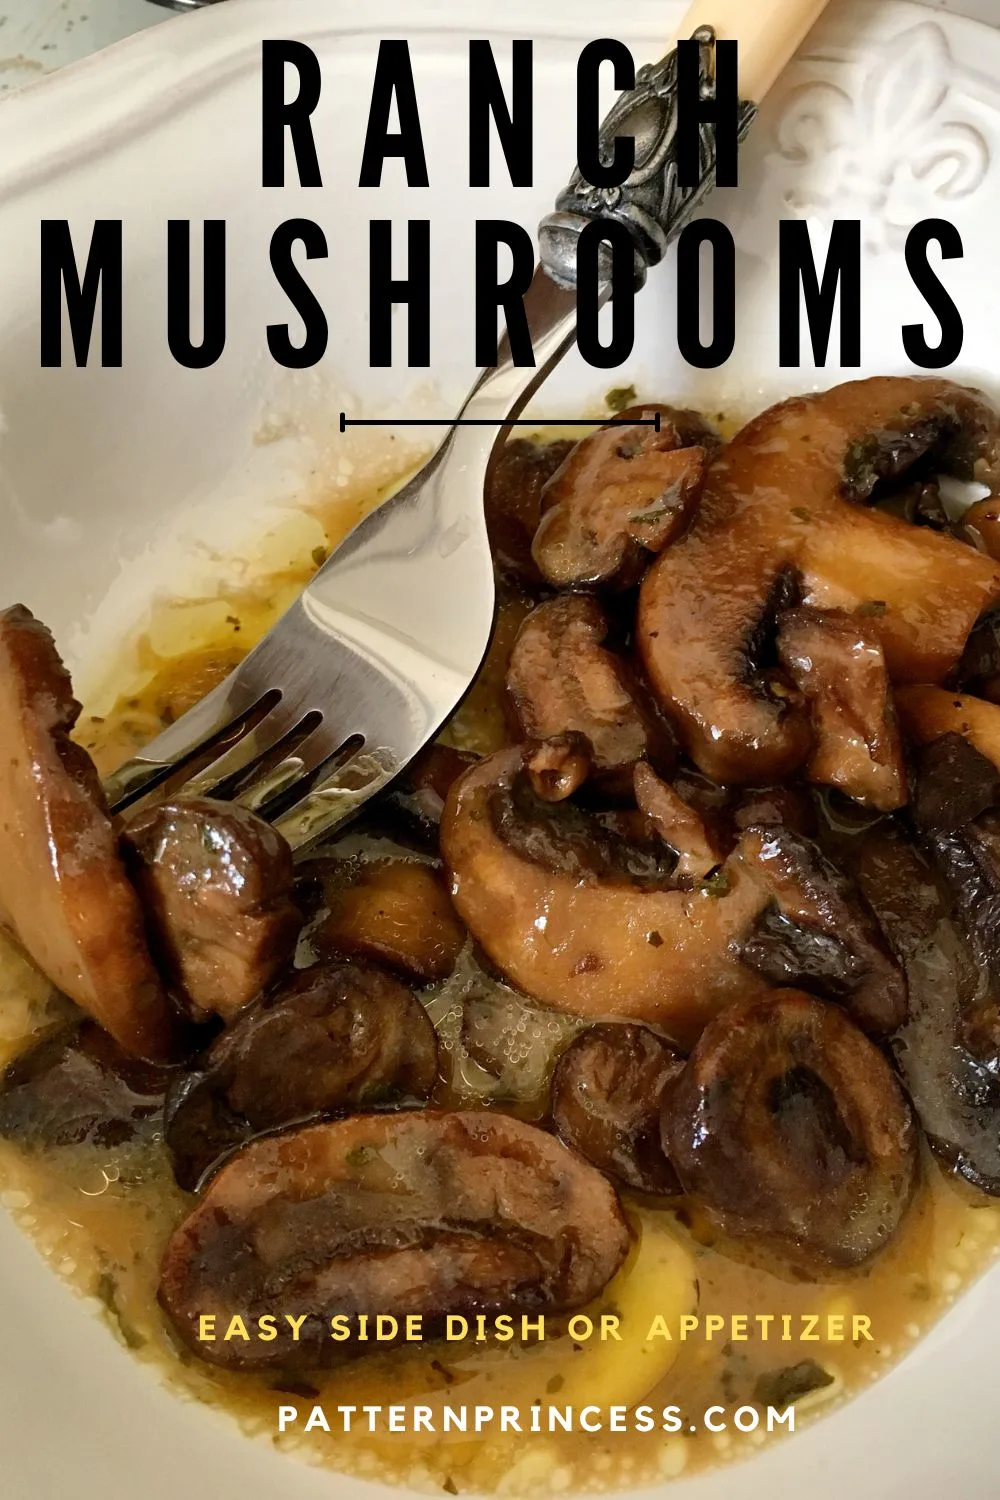 Ranch Mushrooms